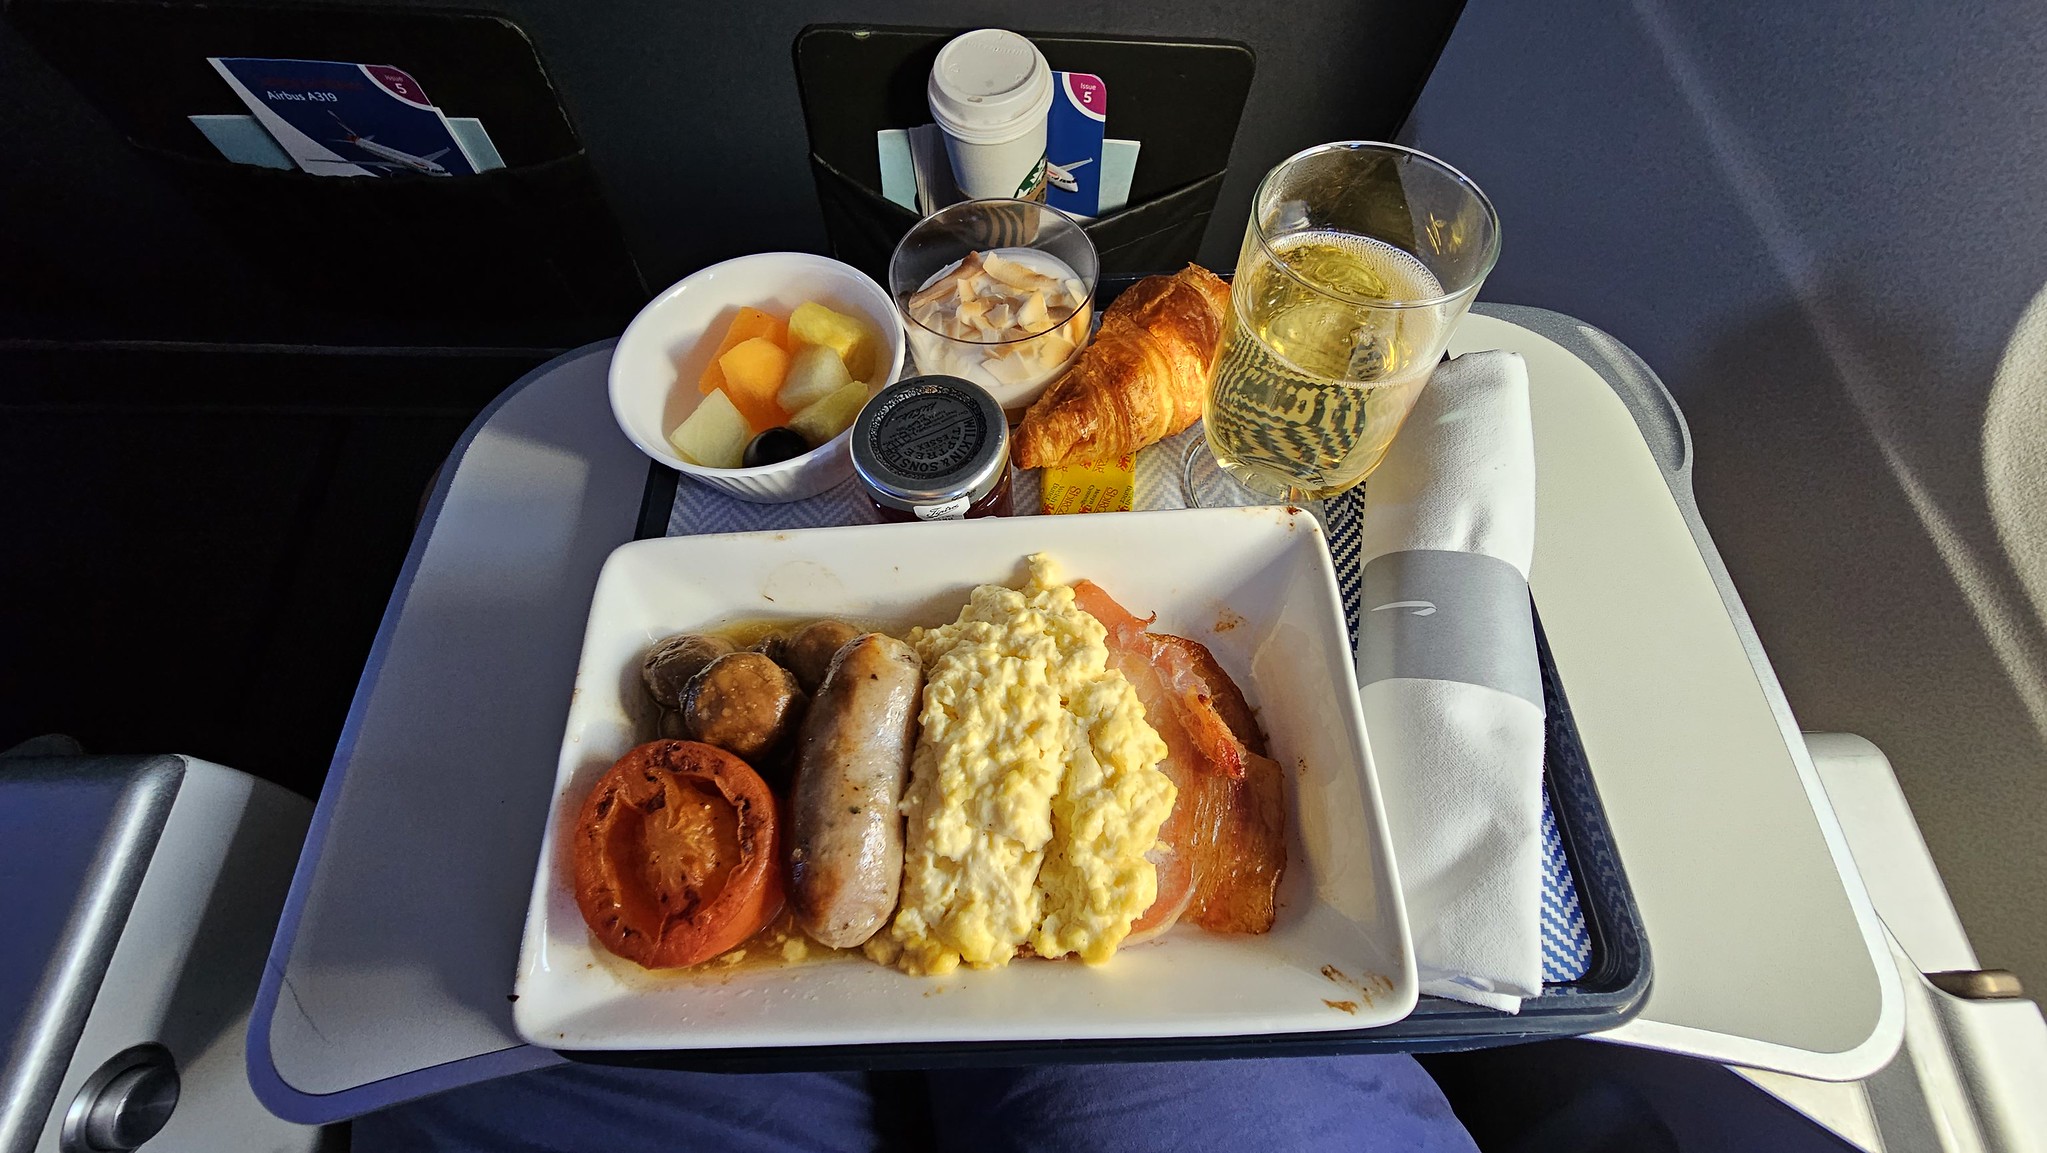 Breakfast on board the BA flight to Stockholm